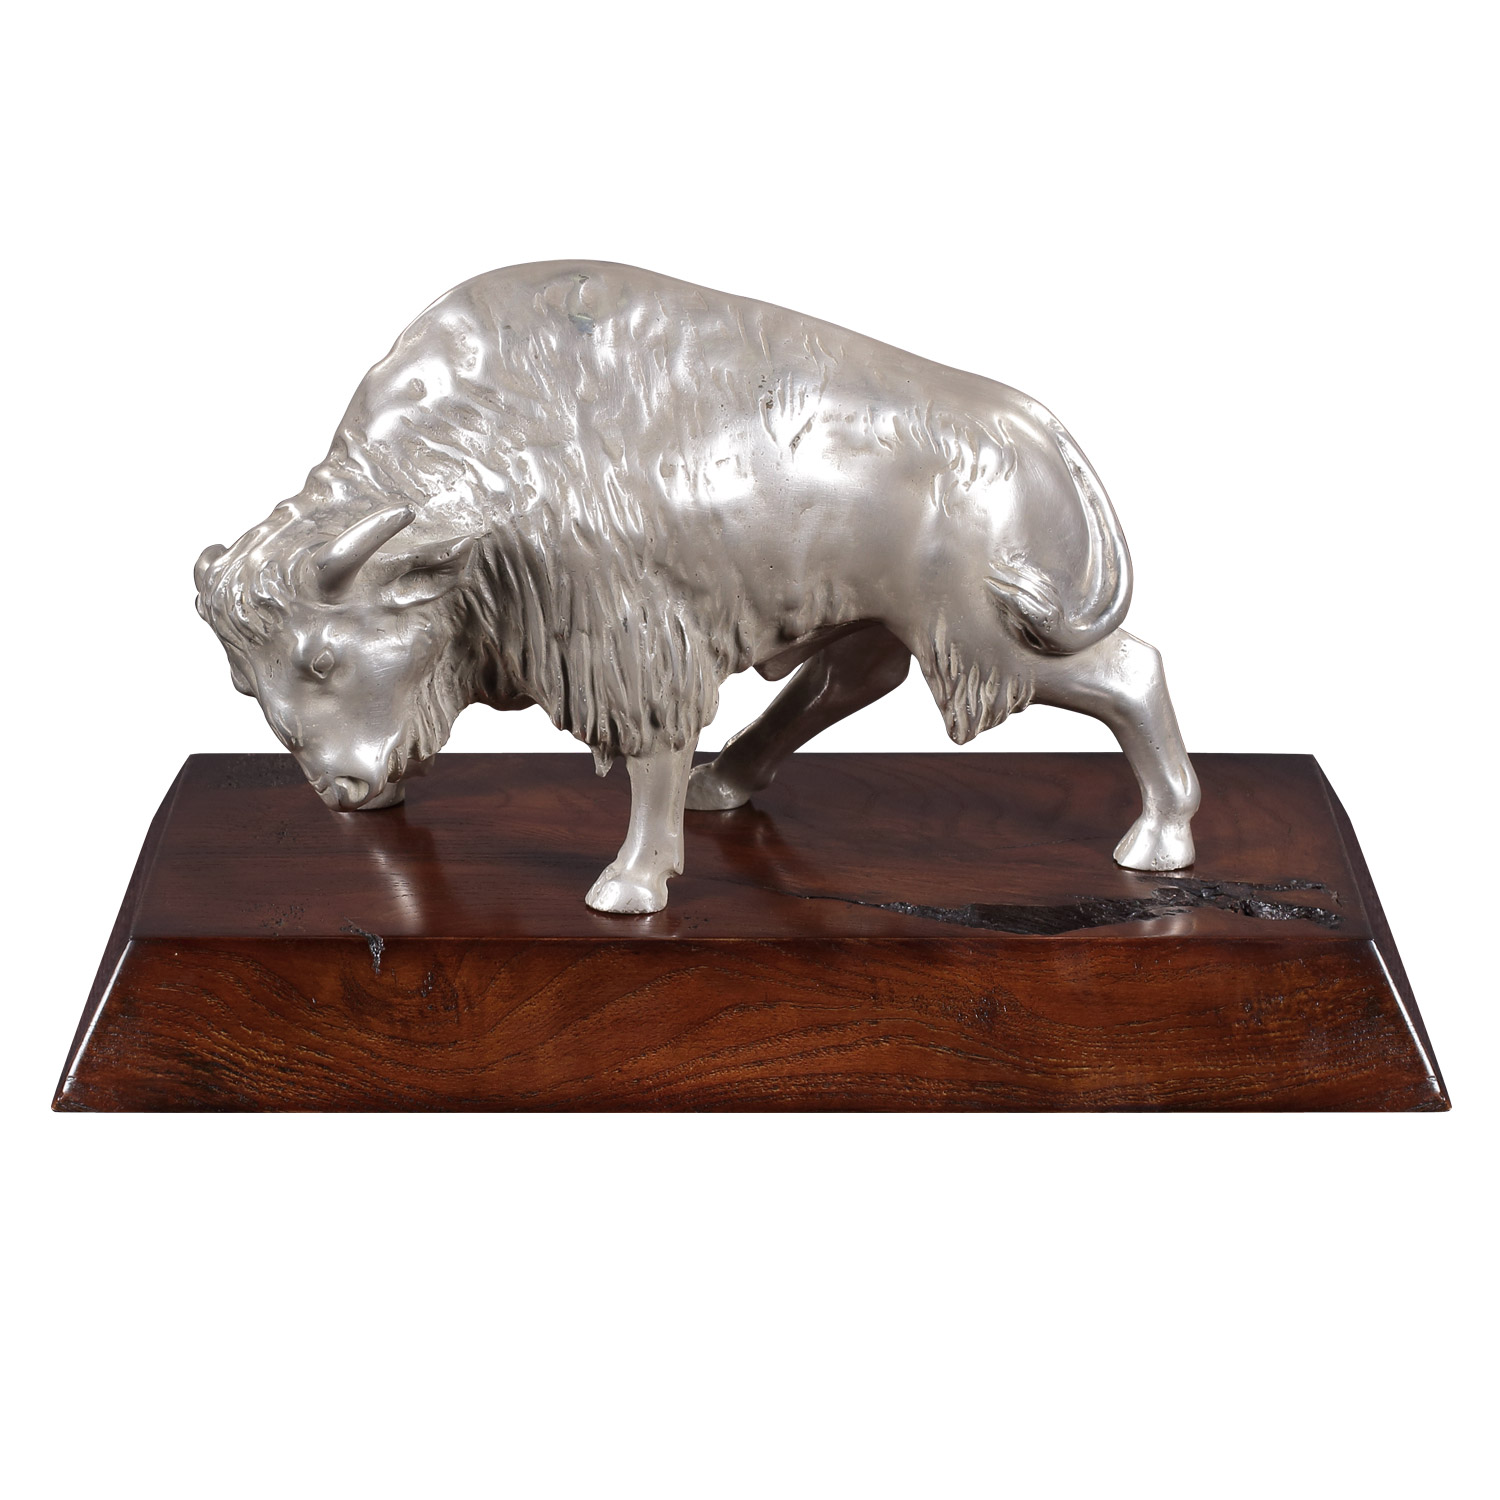 "Bison" vernickelte Bronzefigur mit handbemalten Details